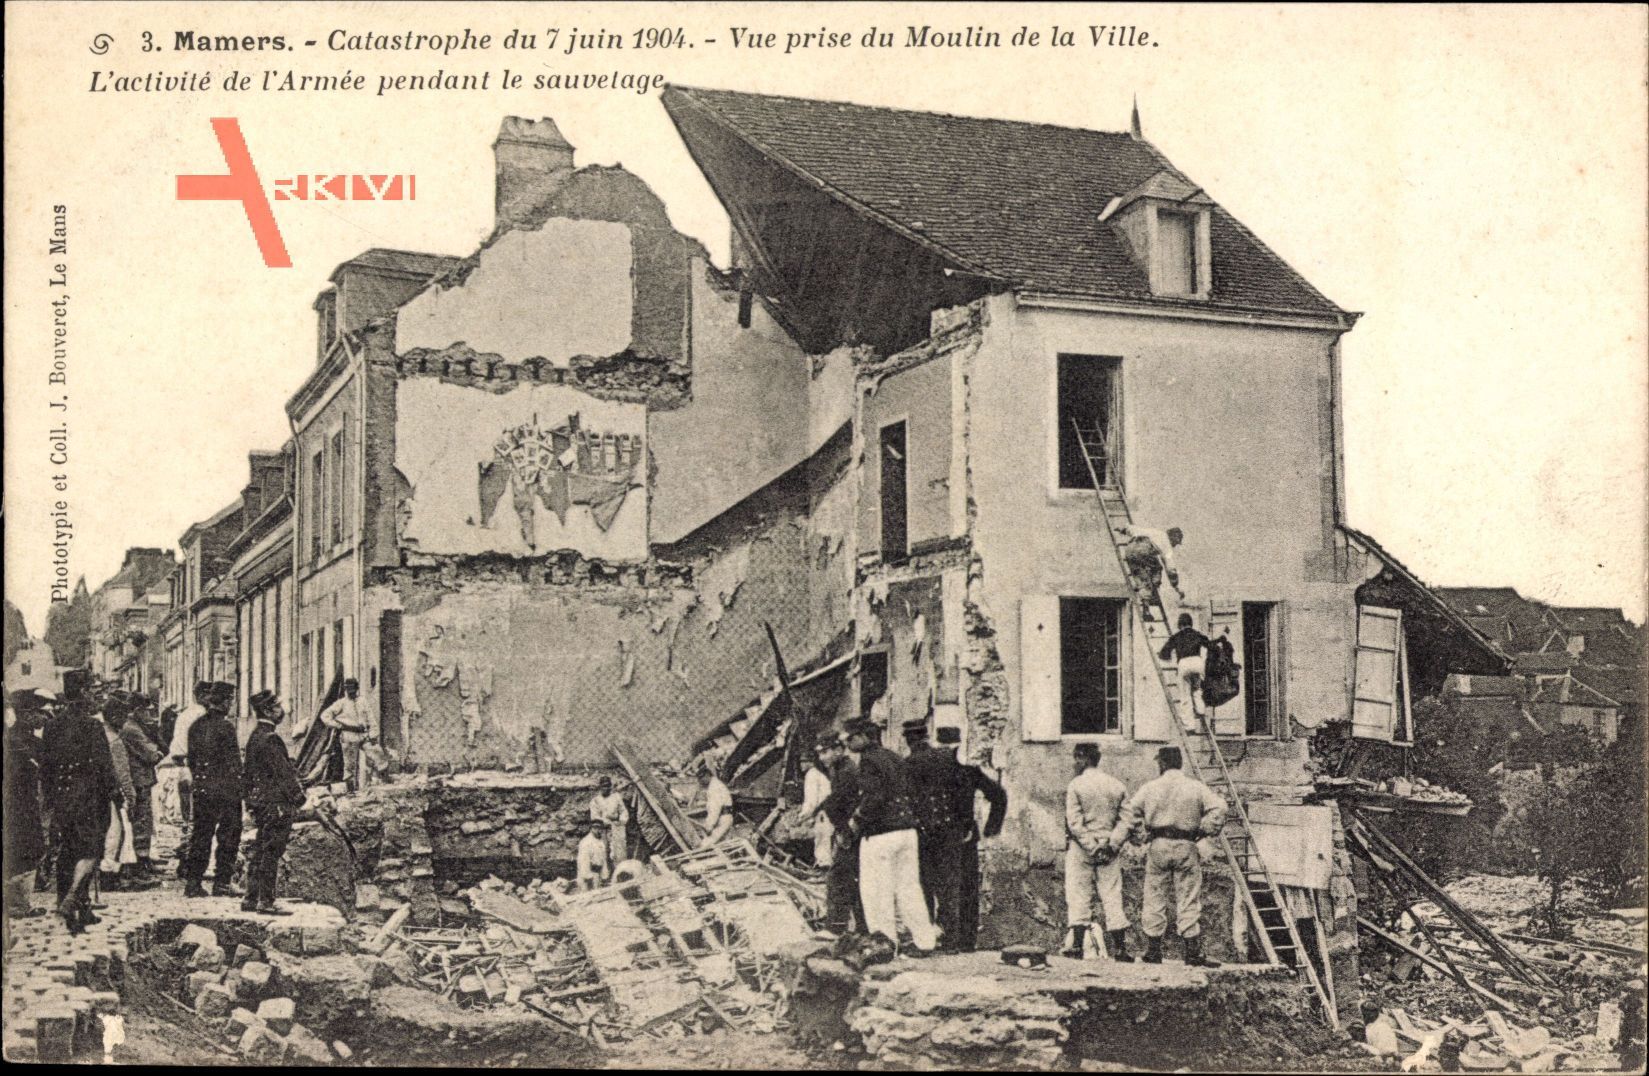 Mamers Sarthe, Catastrophe du 7 juin 1904, vue prise du Moulin de la Ville